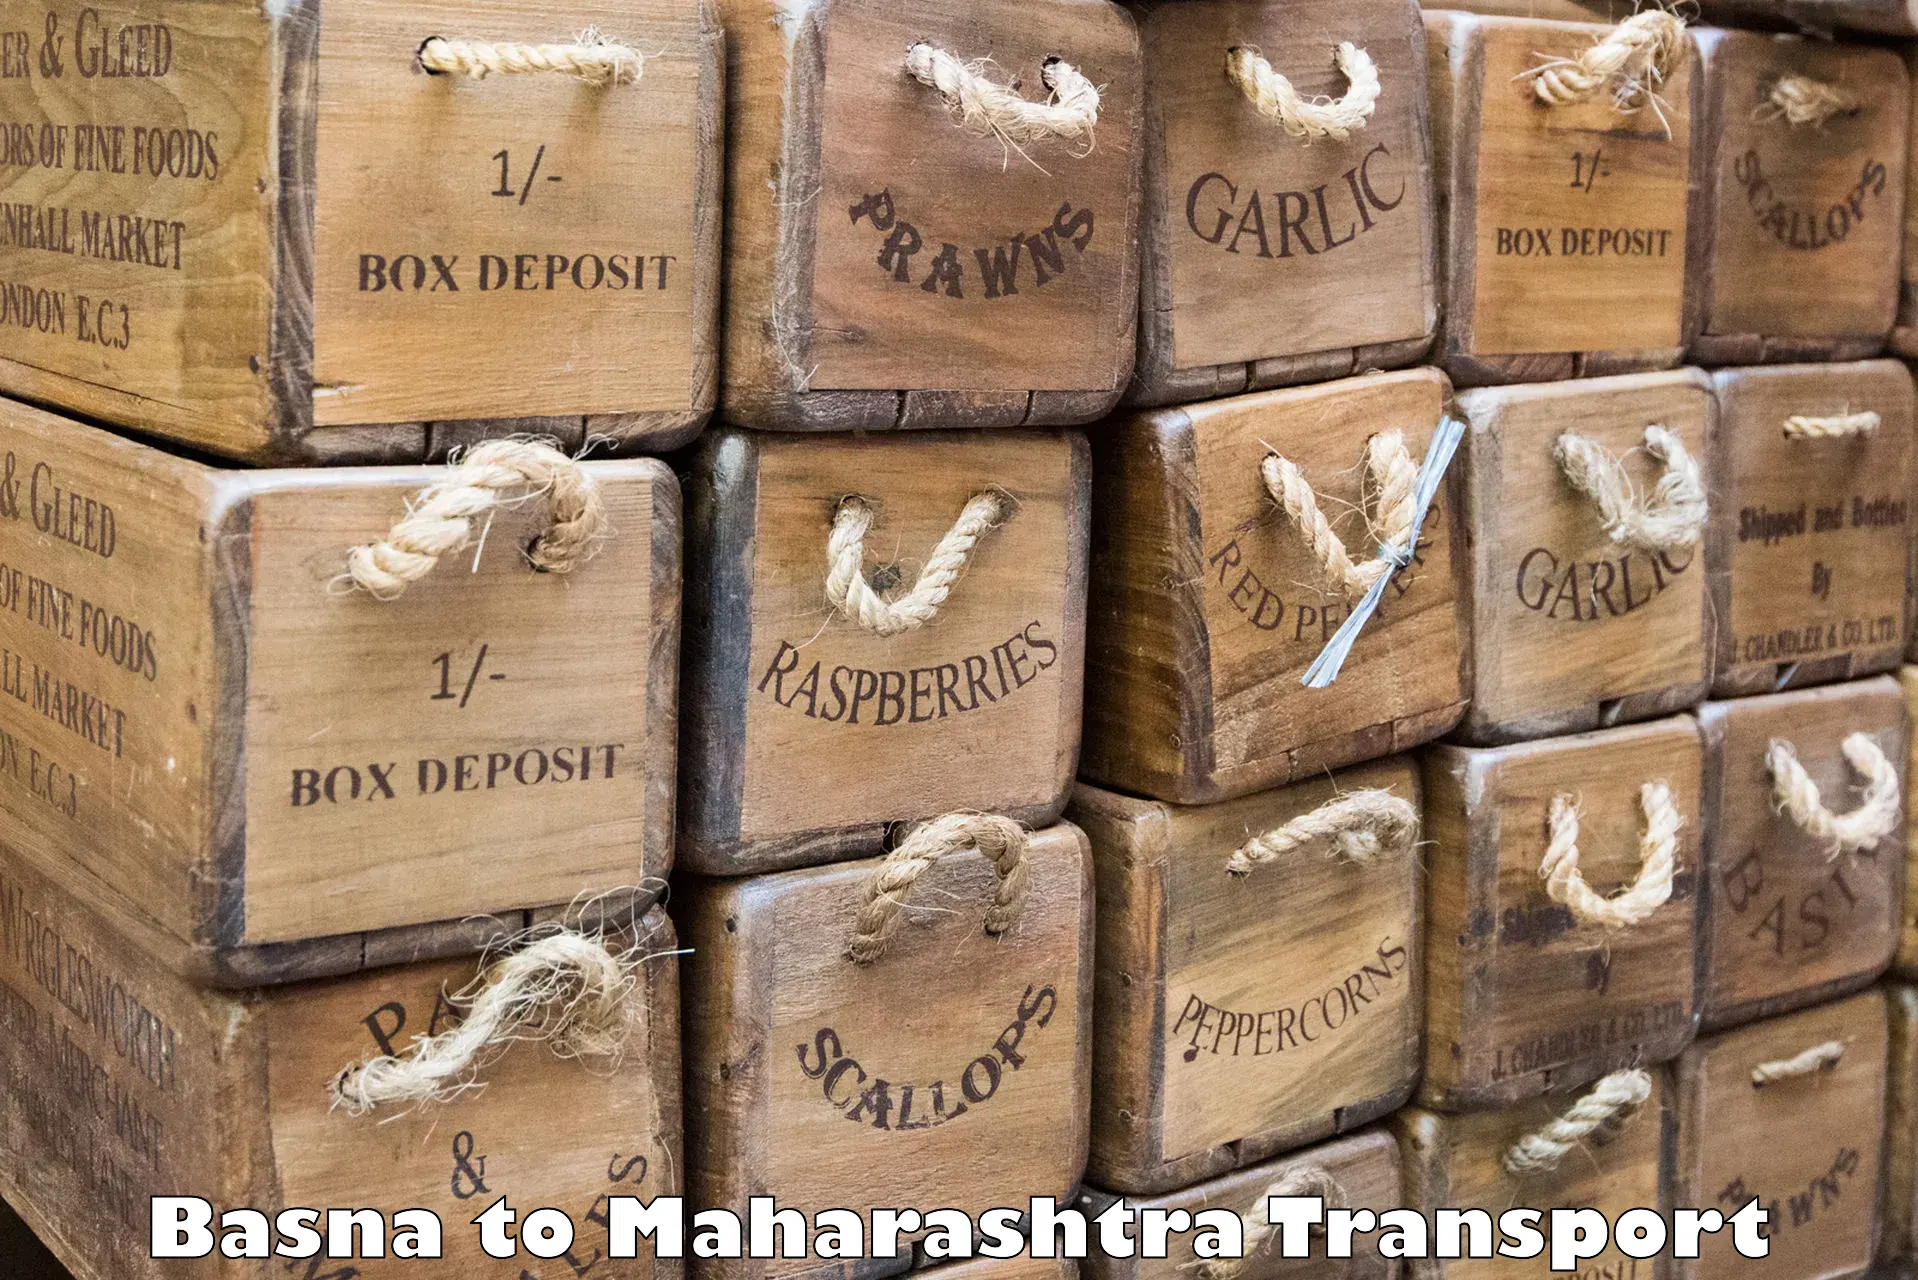 Inland transportation services Basna to IIT Mumbai